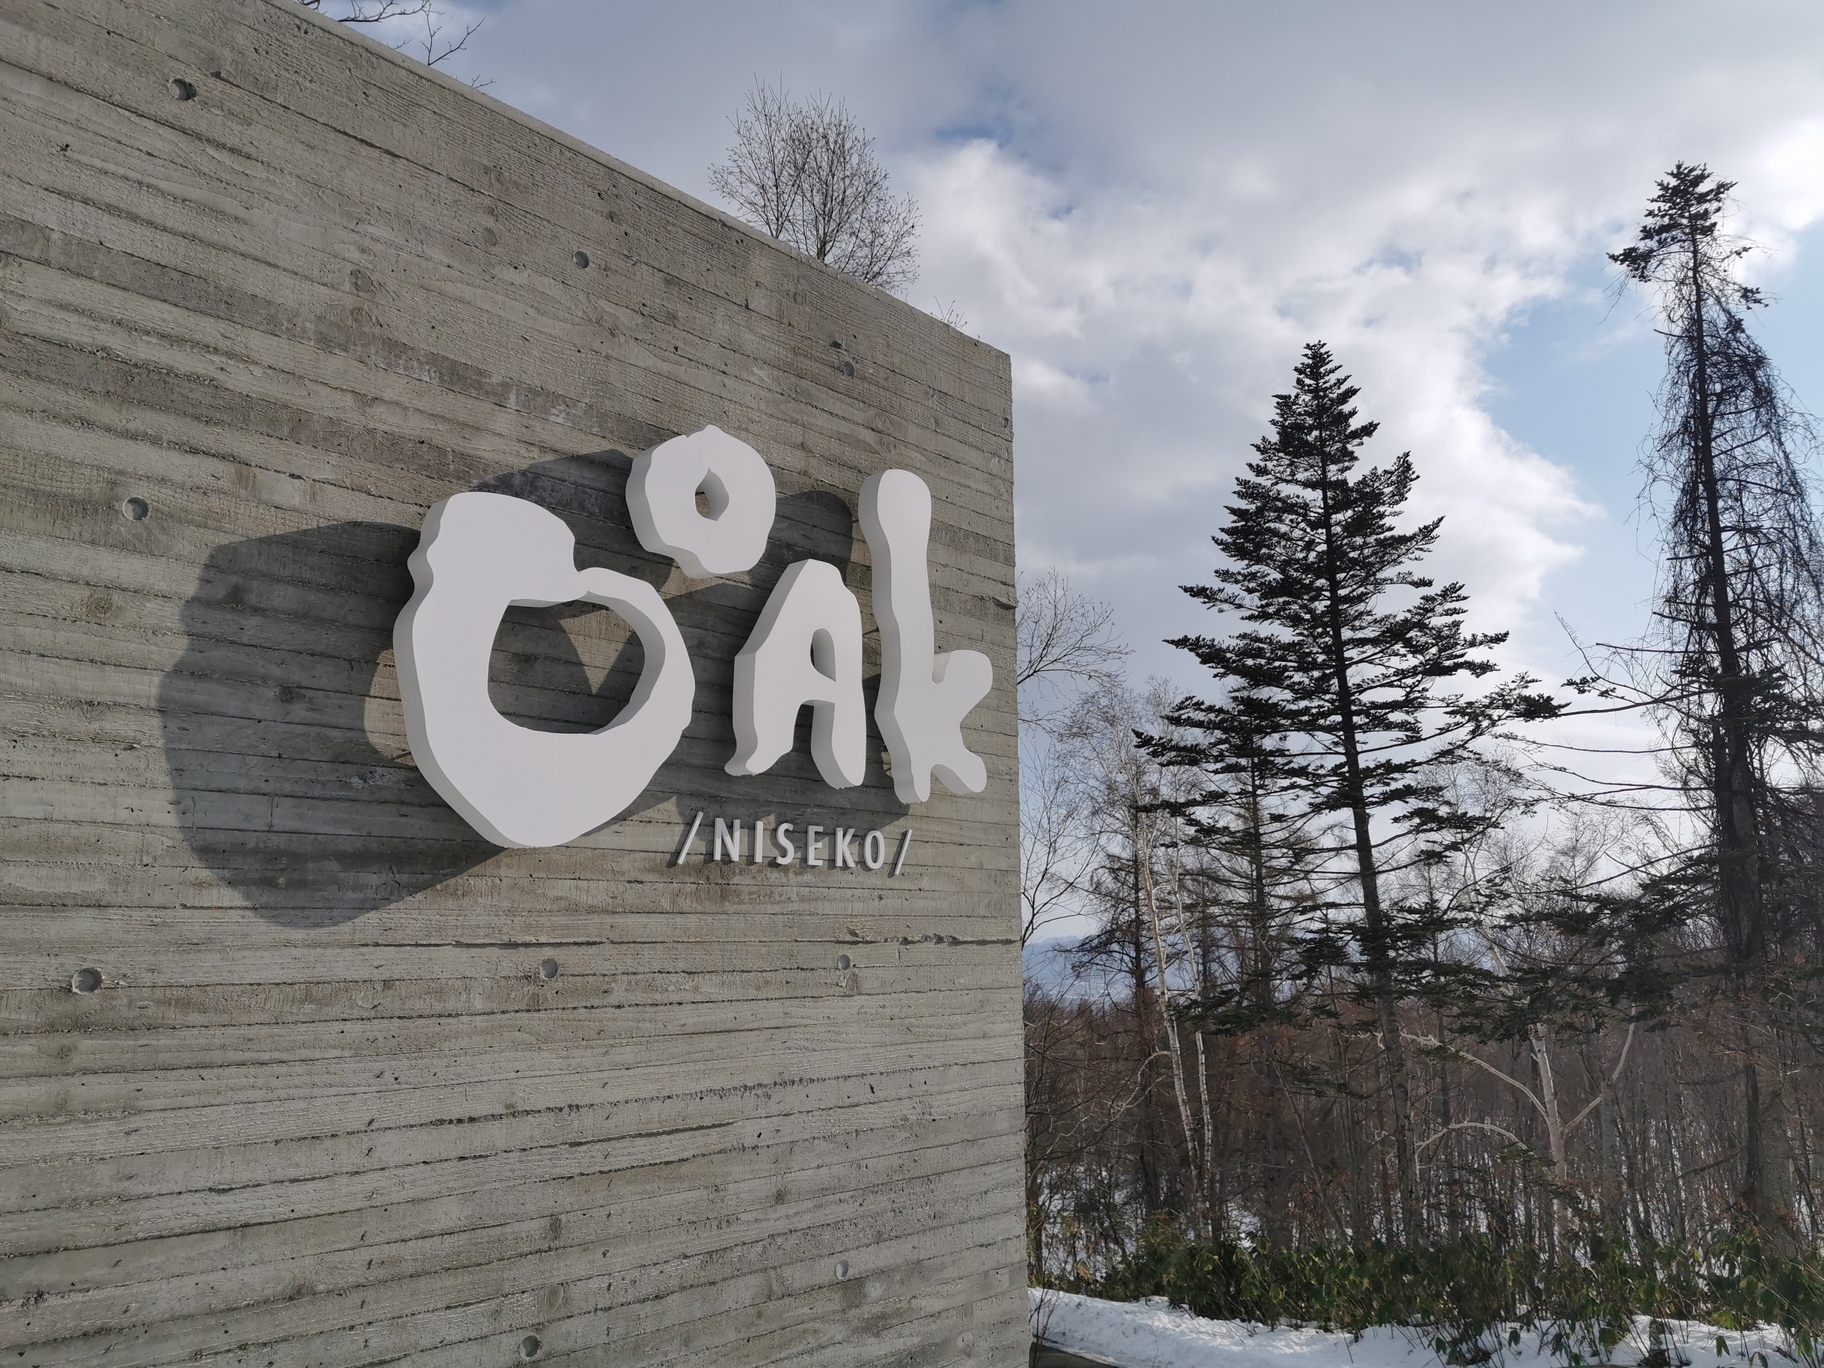 取名为 OOAK Niseko 的度假屋，蕴含「享受生活，享受设计」的精神。